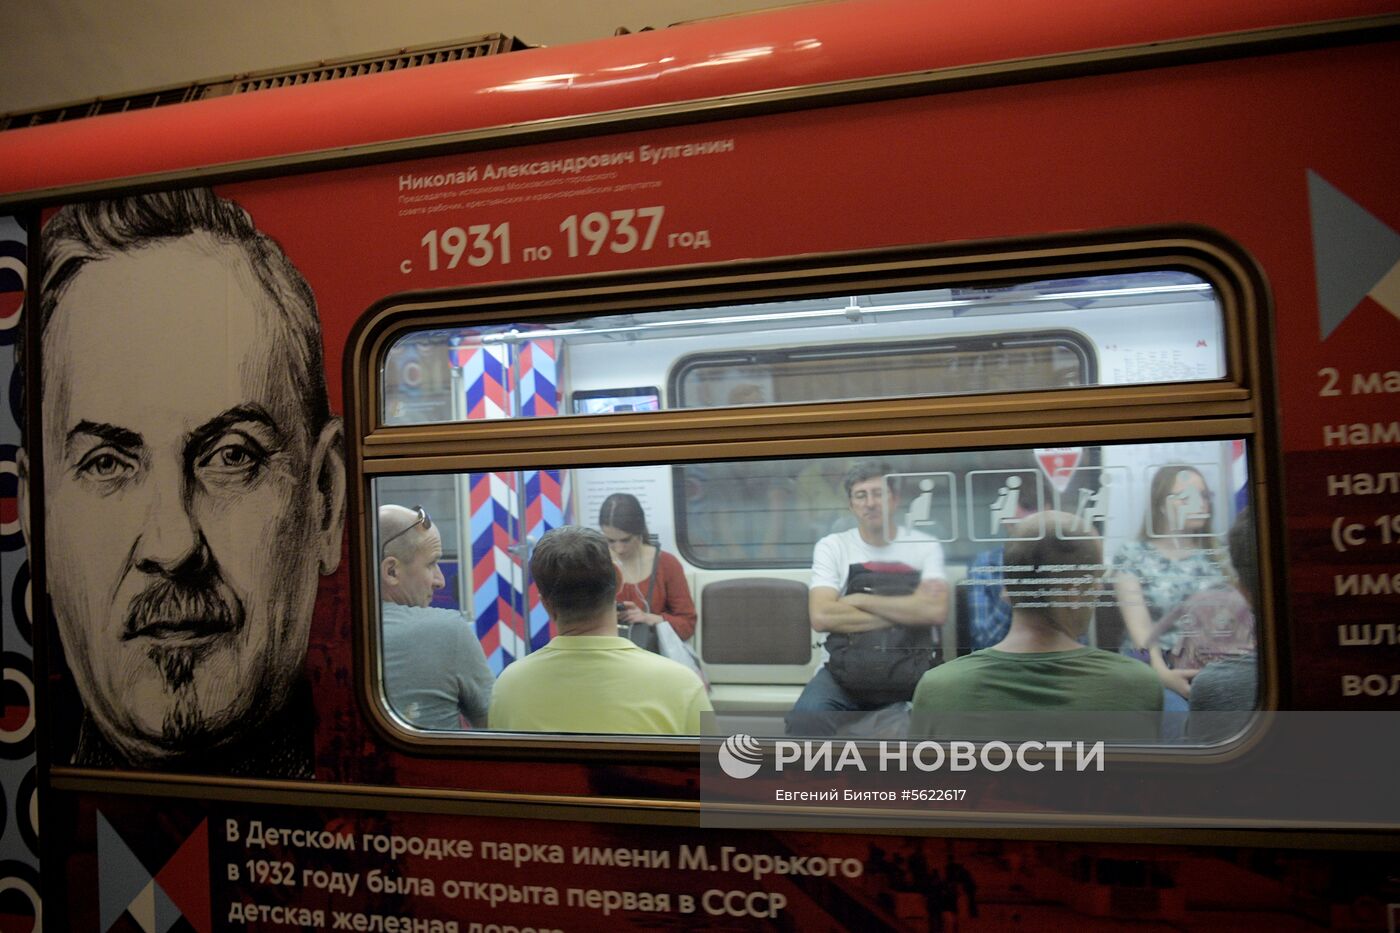 Запуск тематического поезда "Градоначальники Москвы" 